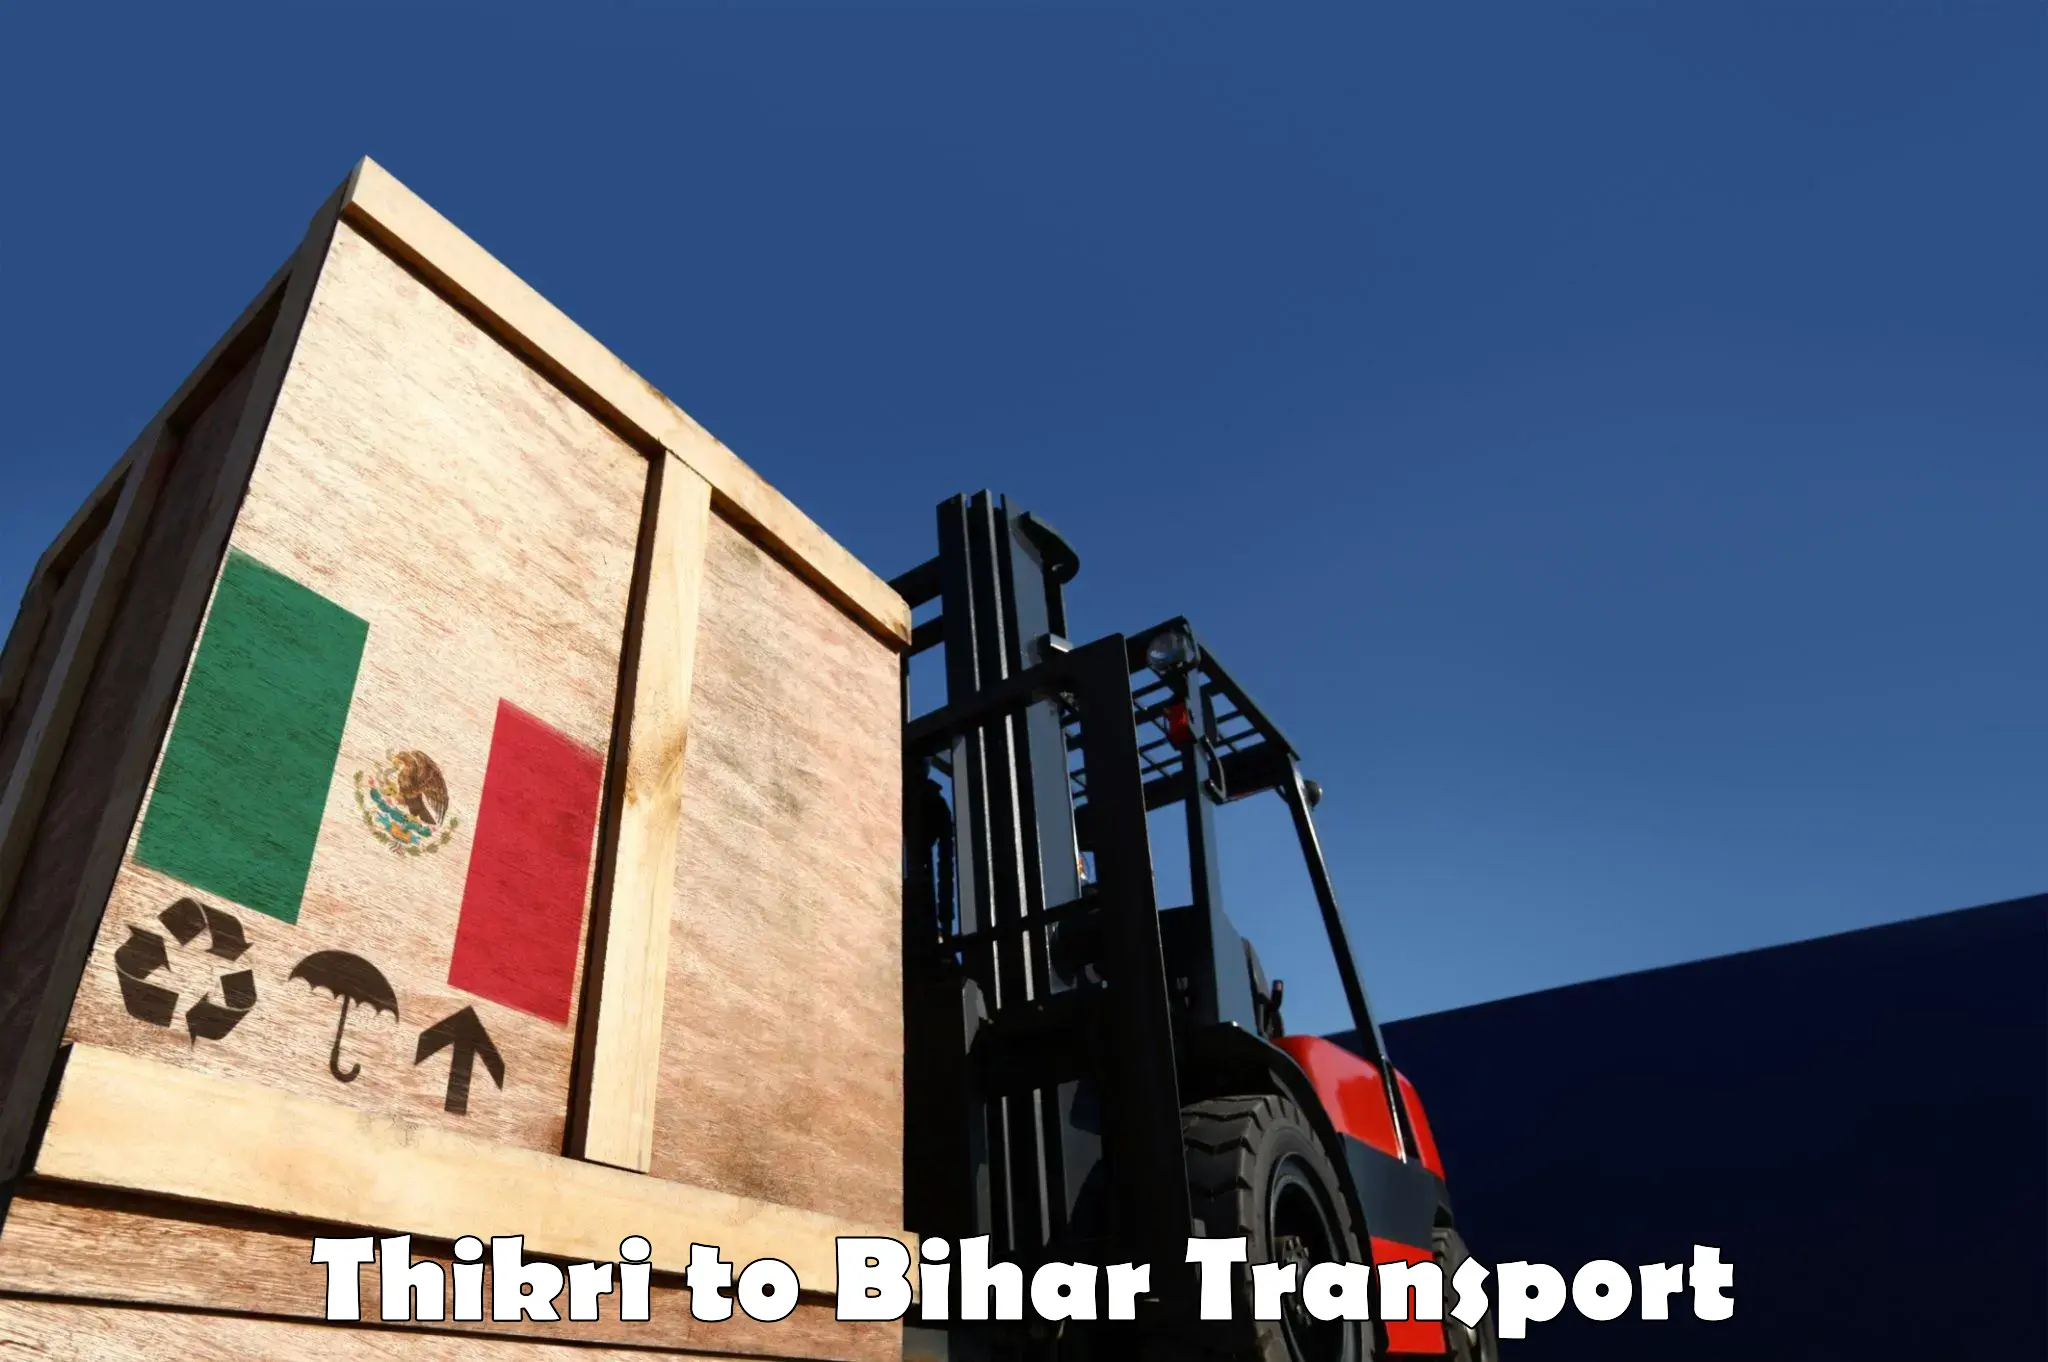 Transport in sharing Thikri to Malmaliya